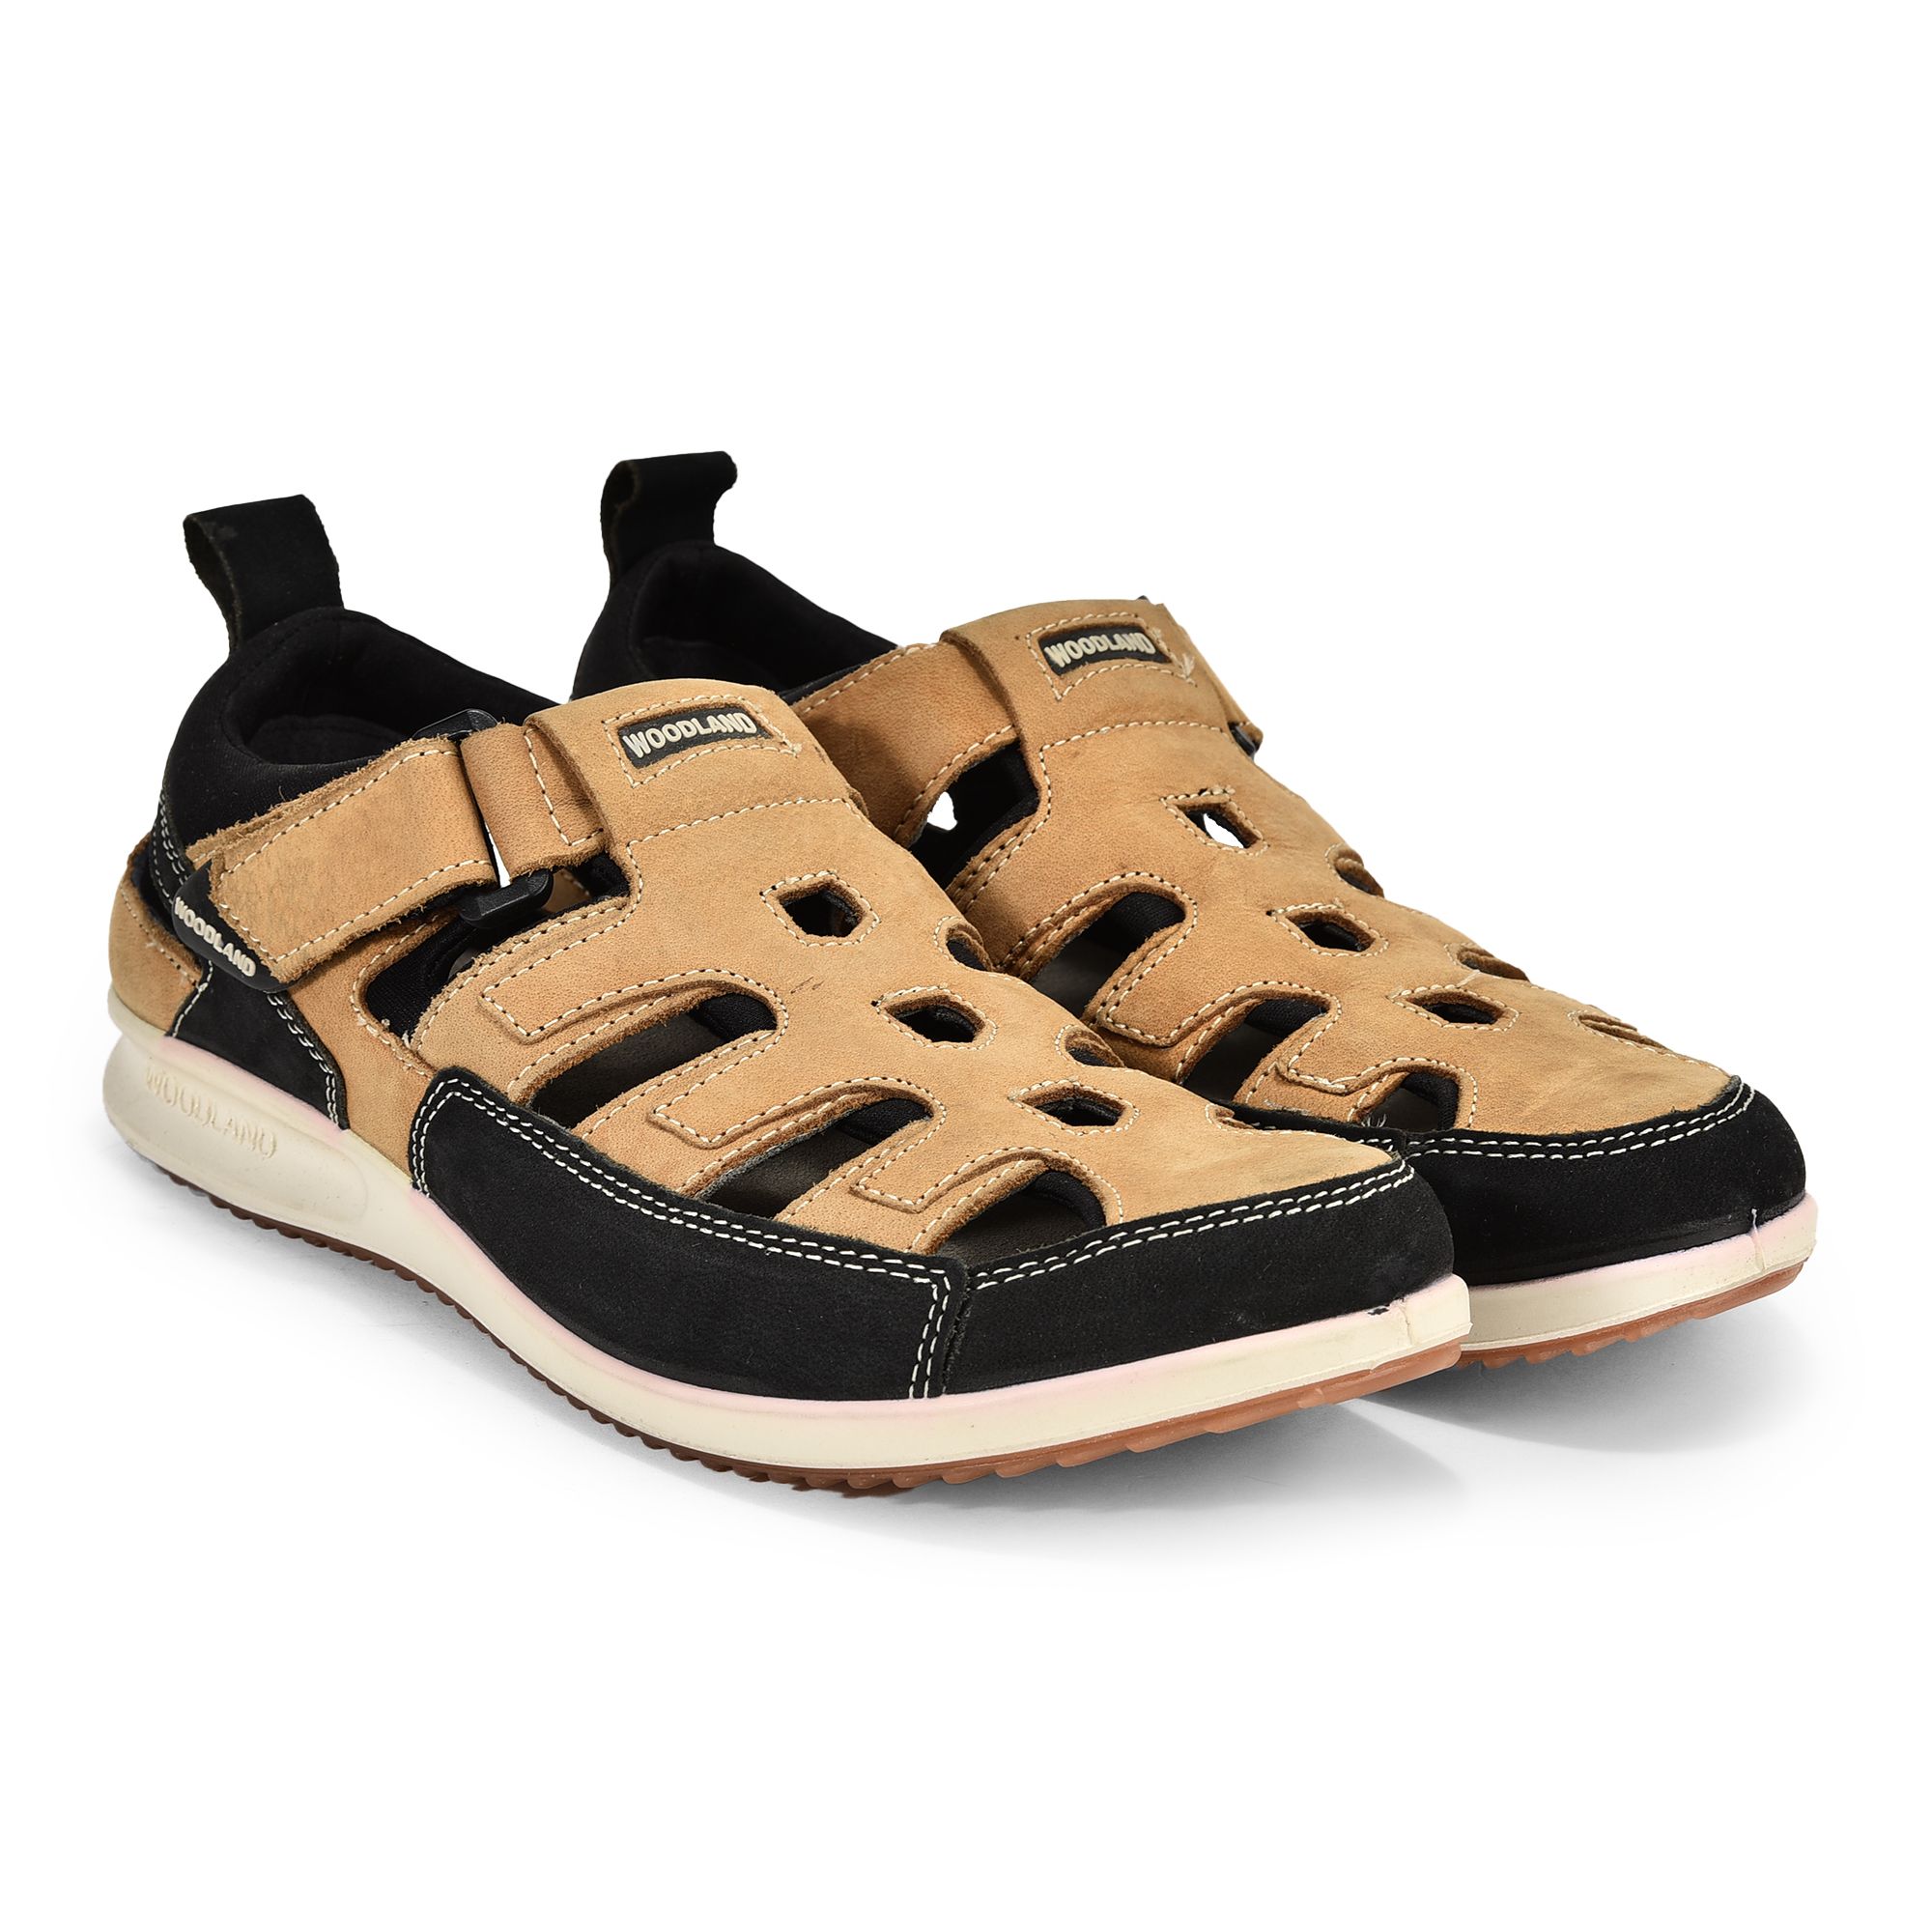 Woodland Men's 3328119 Khaki Leather Sandal-7 UK (41 EU) (OGD 3328119KHAKI)  : Amazon.in: Fashion